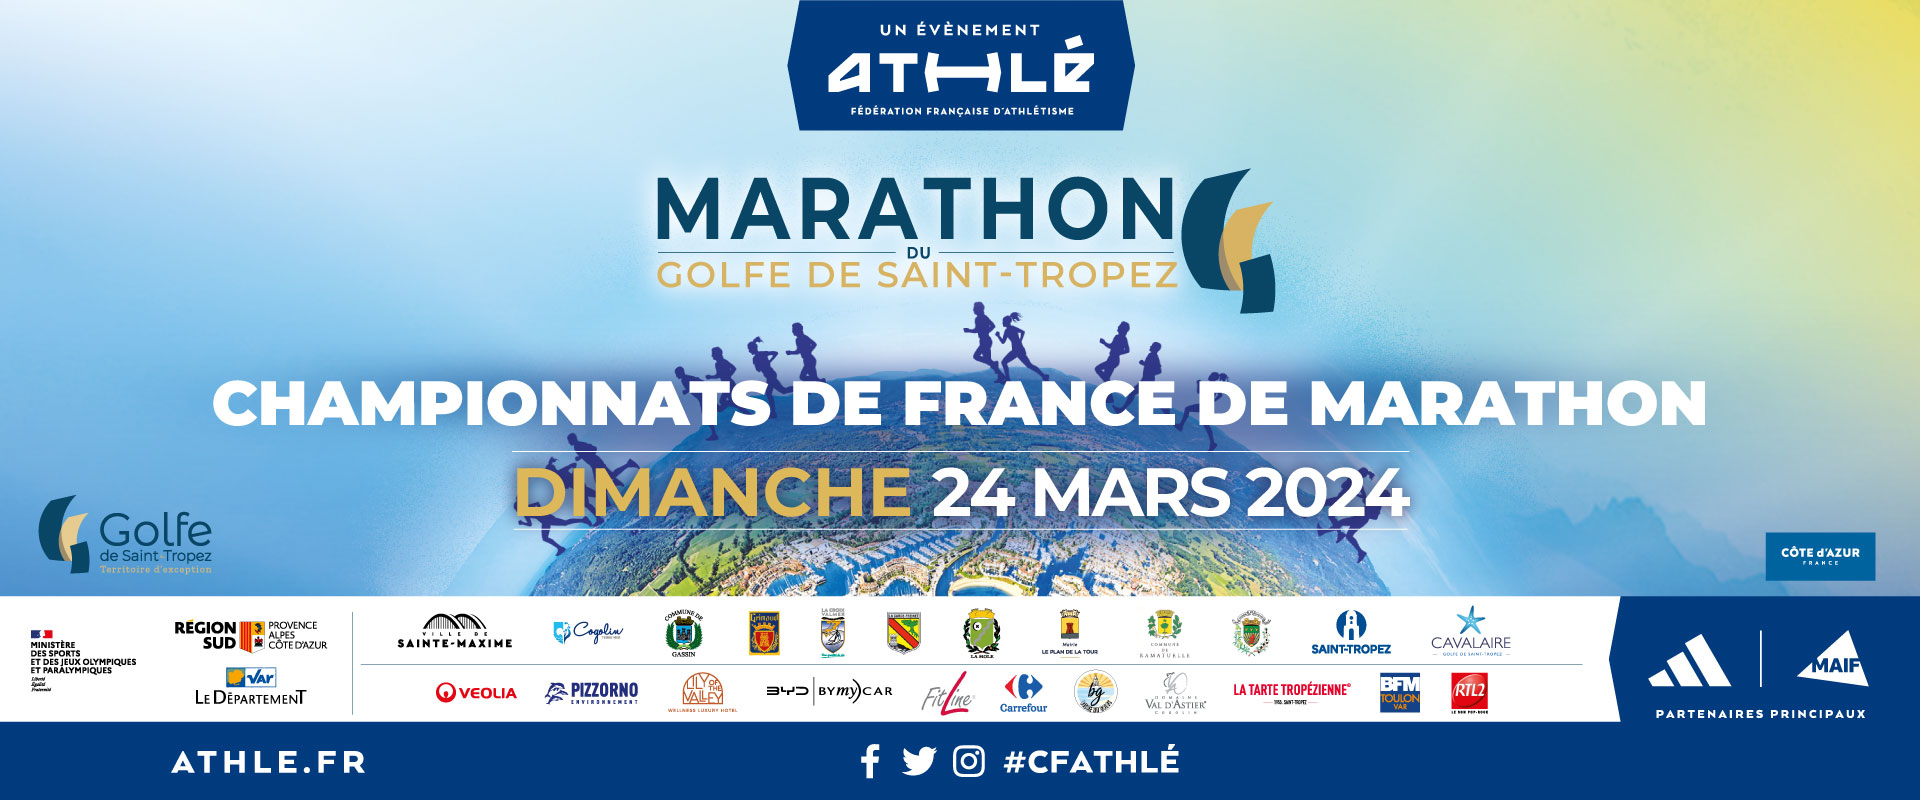 Marathon du Golfe de Saint-Tropez - Championnat de France de Marathon 2024